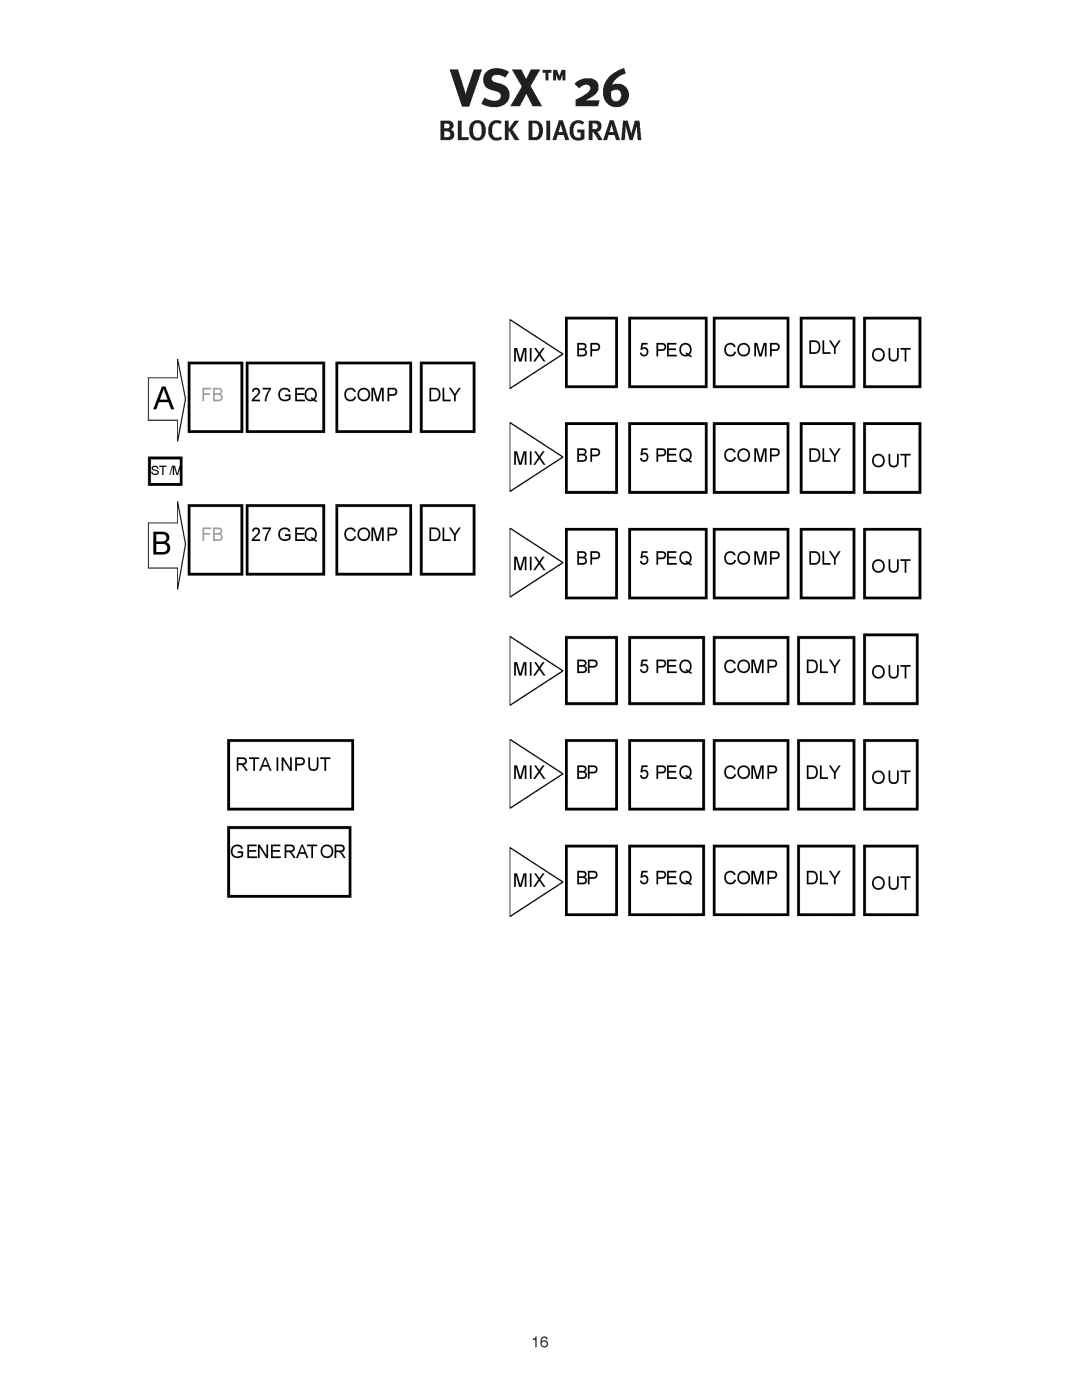 Peavey VSX 26 manual block diagram 